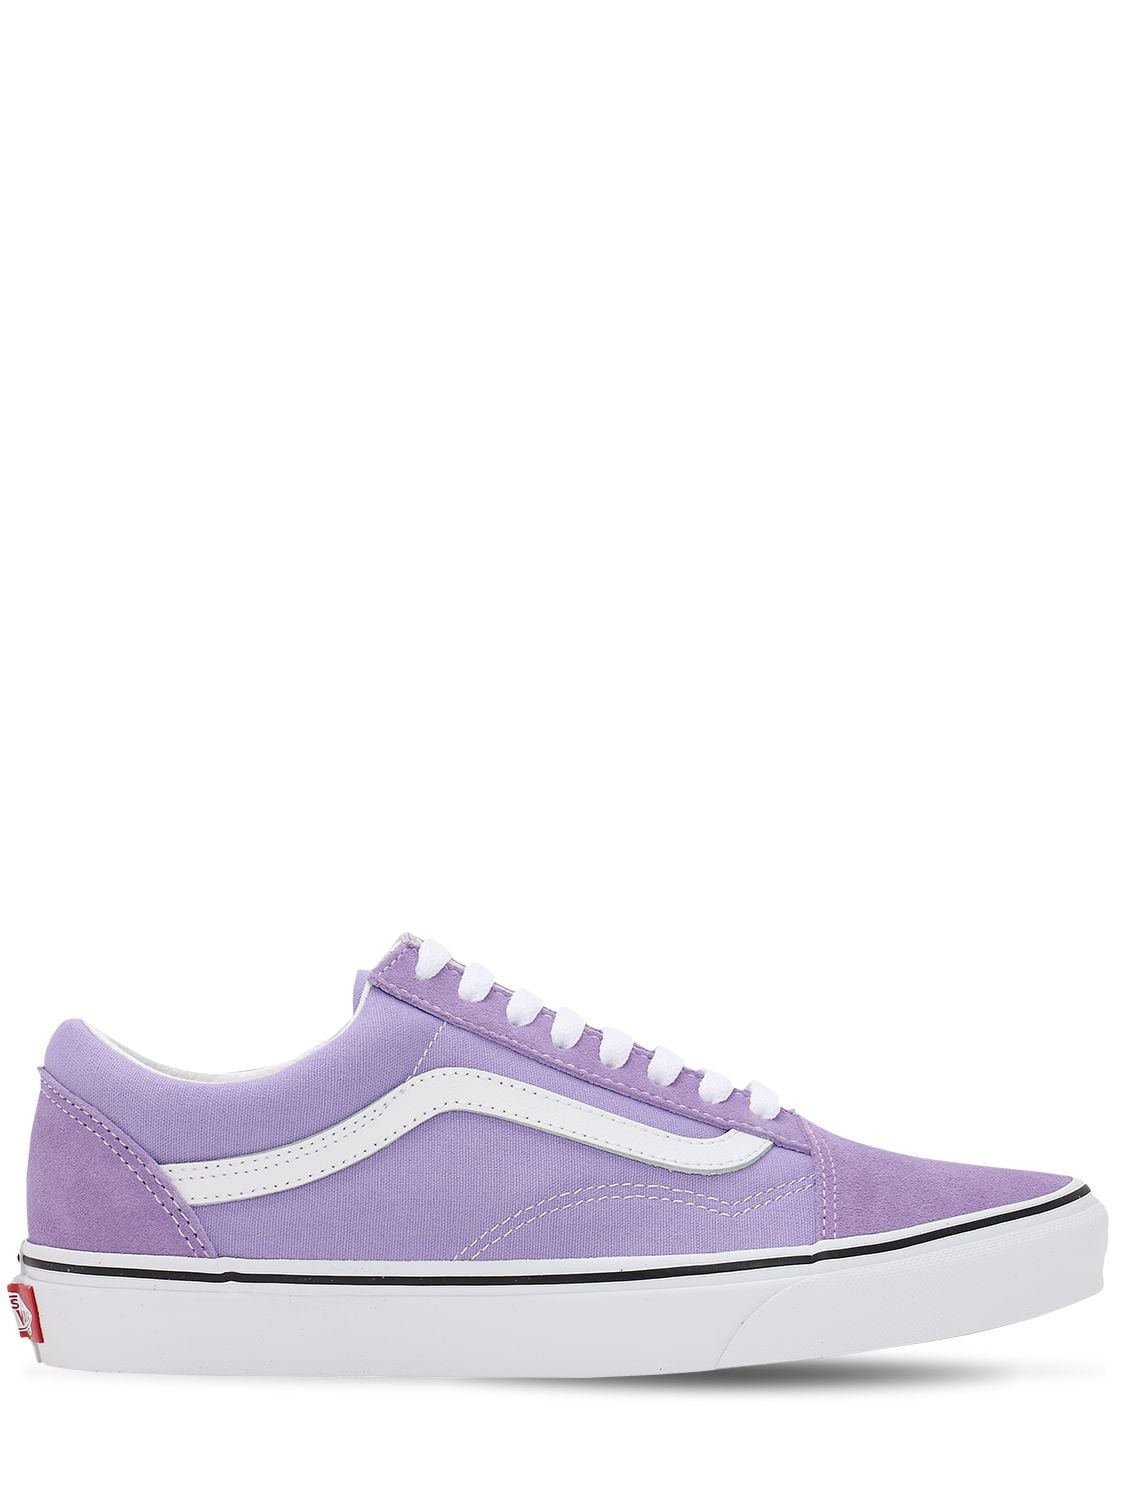 Vans Old Skool Sneakers In Фиолетовый